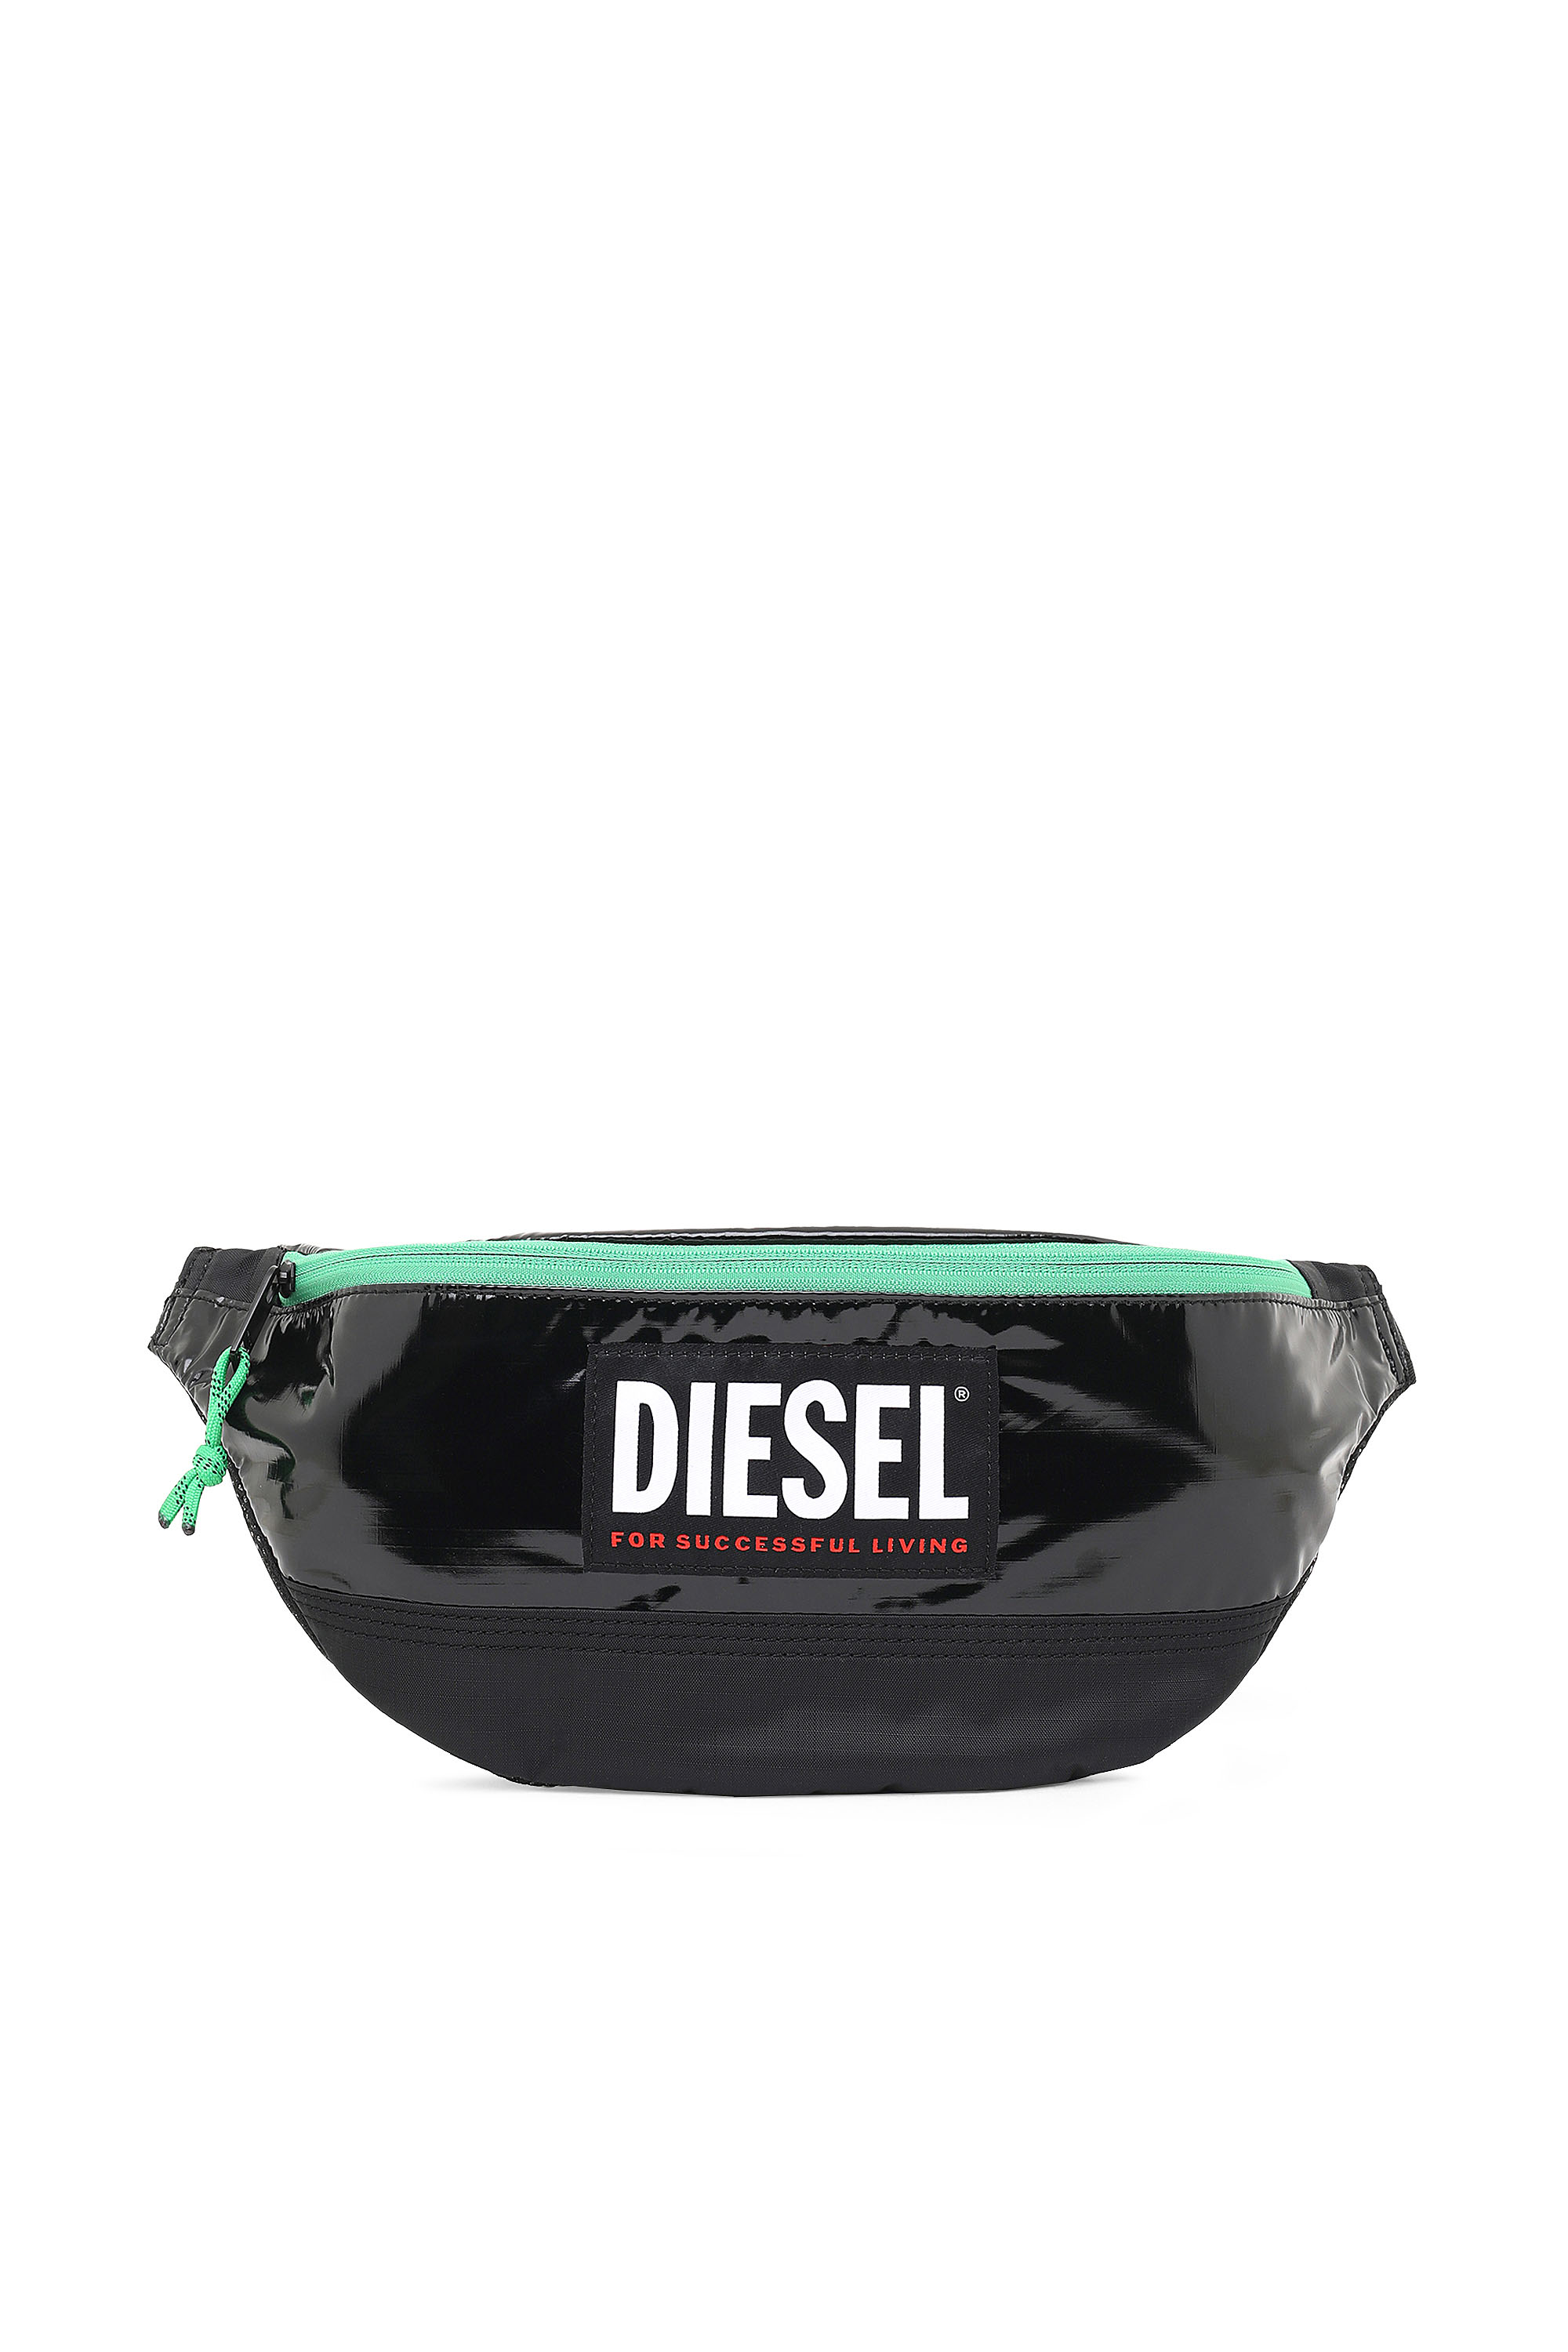 Diesel - LYAM PAT,  - Image 1